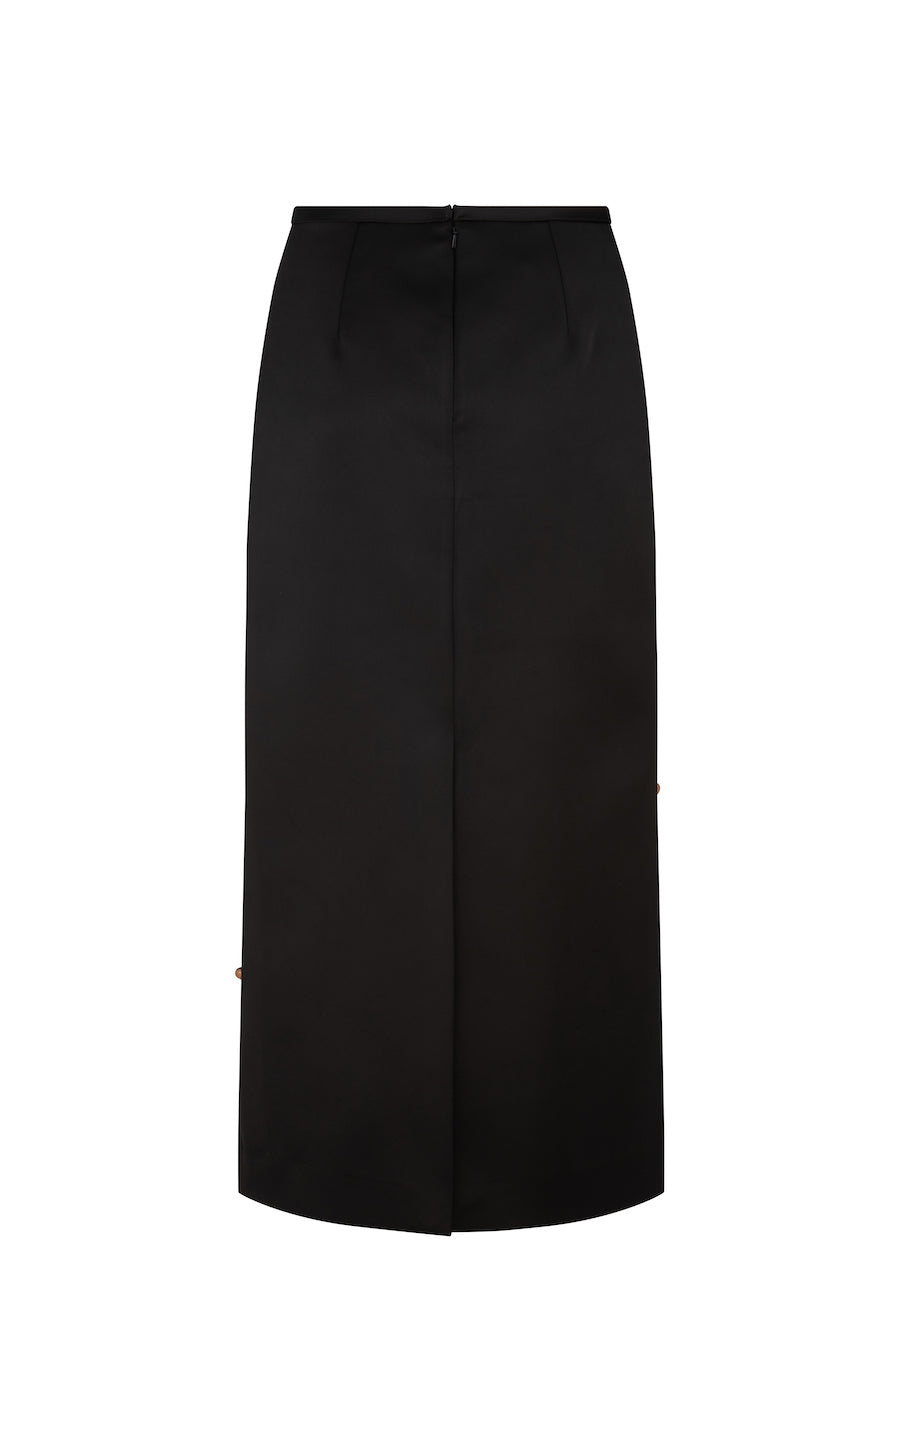 Beaded Holly Skirt: Black Bonded Satin